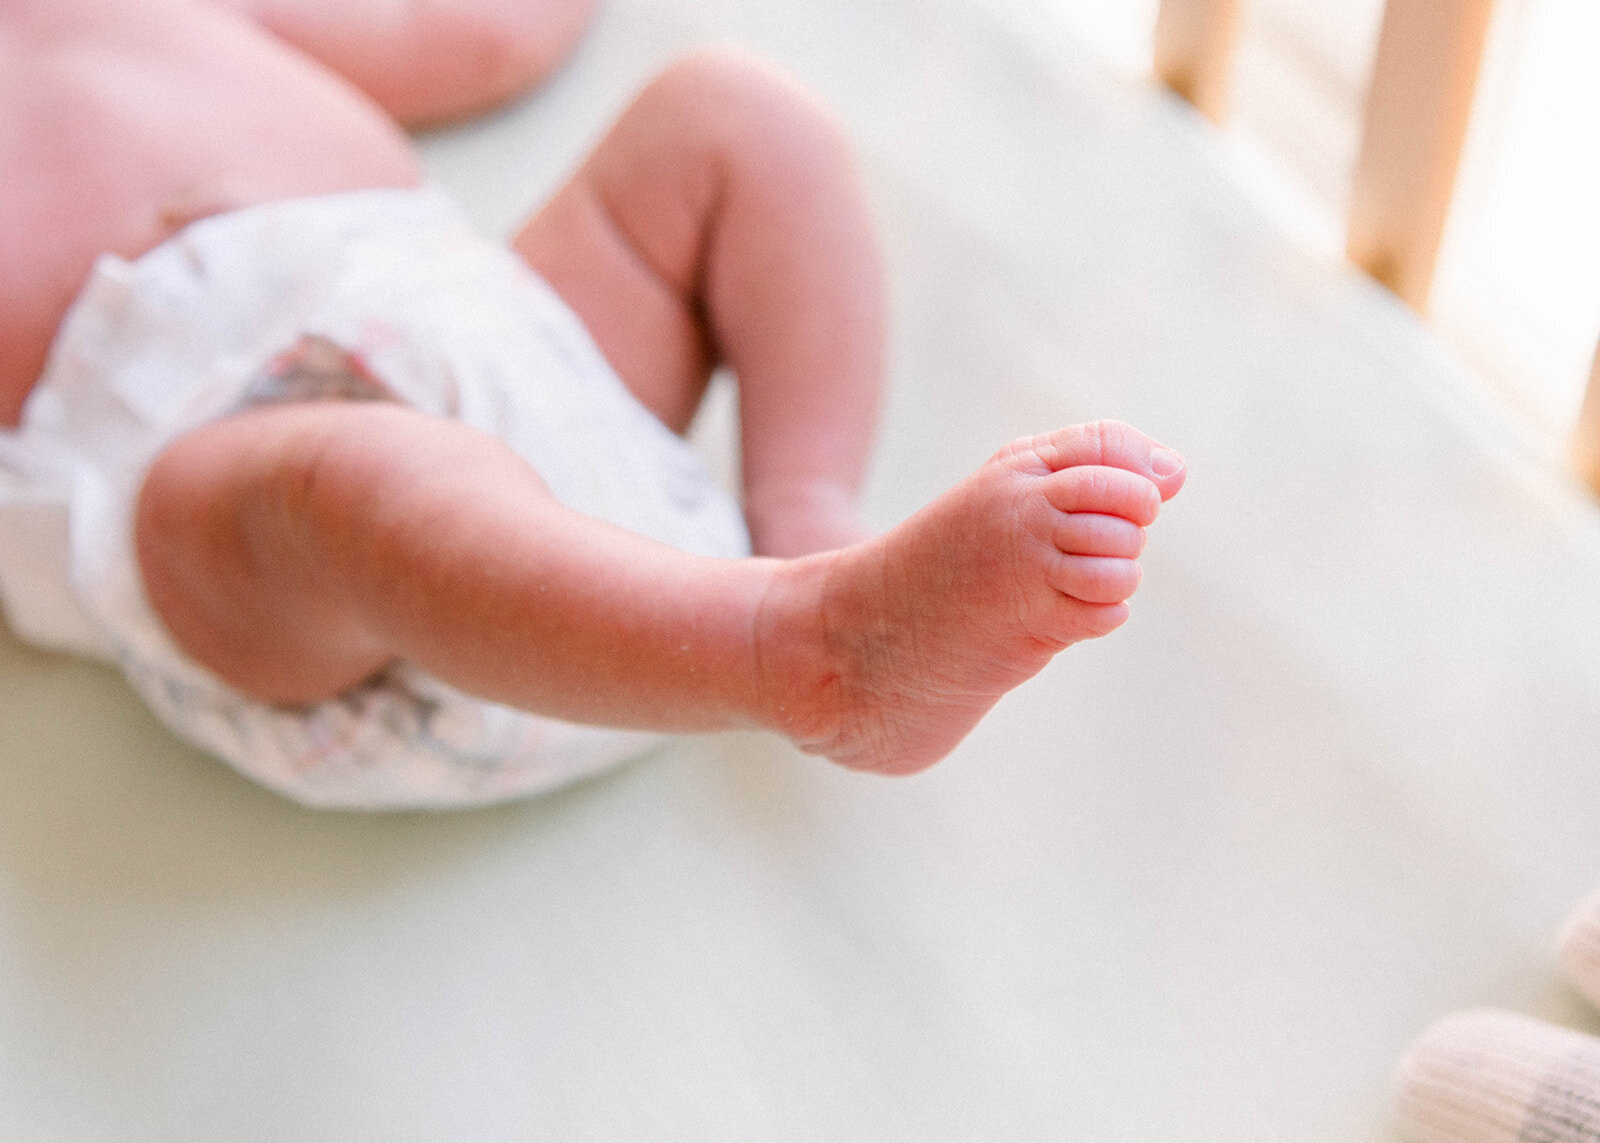 A newborn's little foot